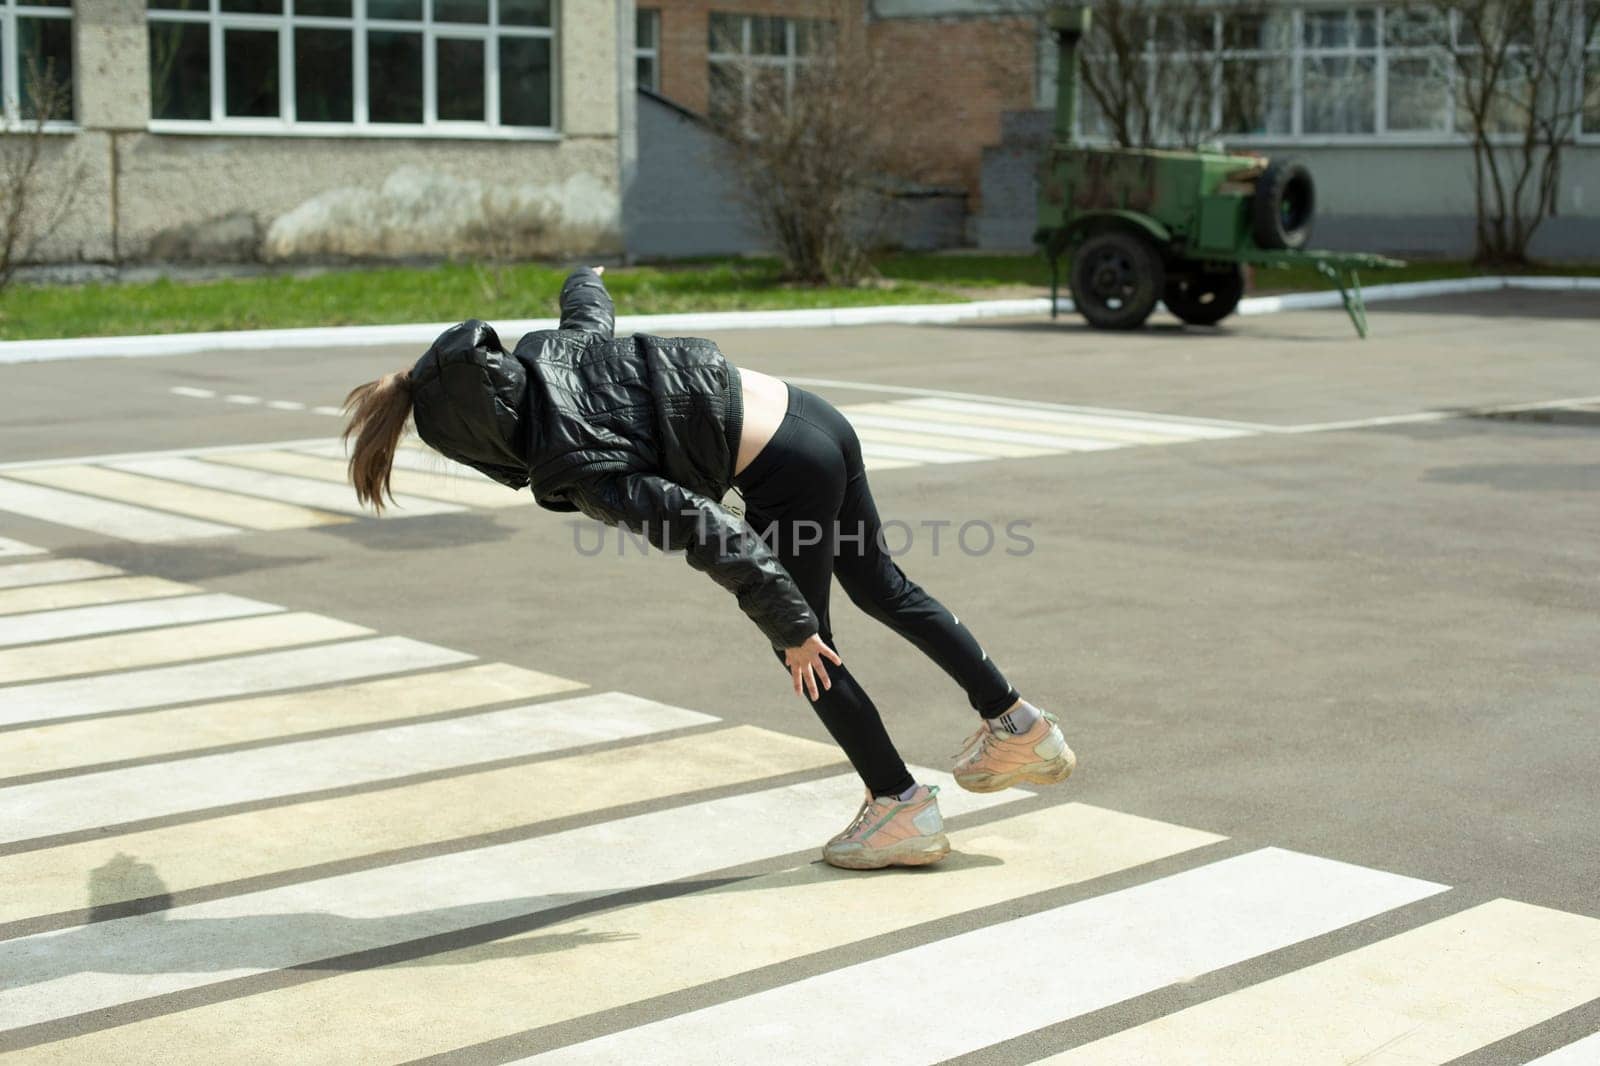 Child falls on asphalt. Beginning of fall. by OlegKopyov